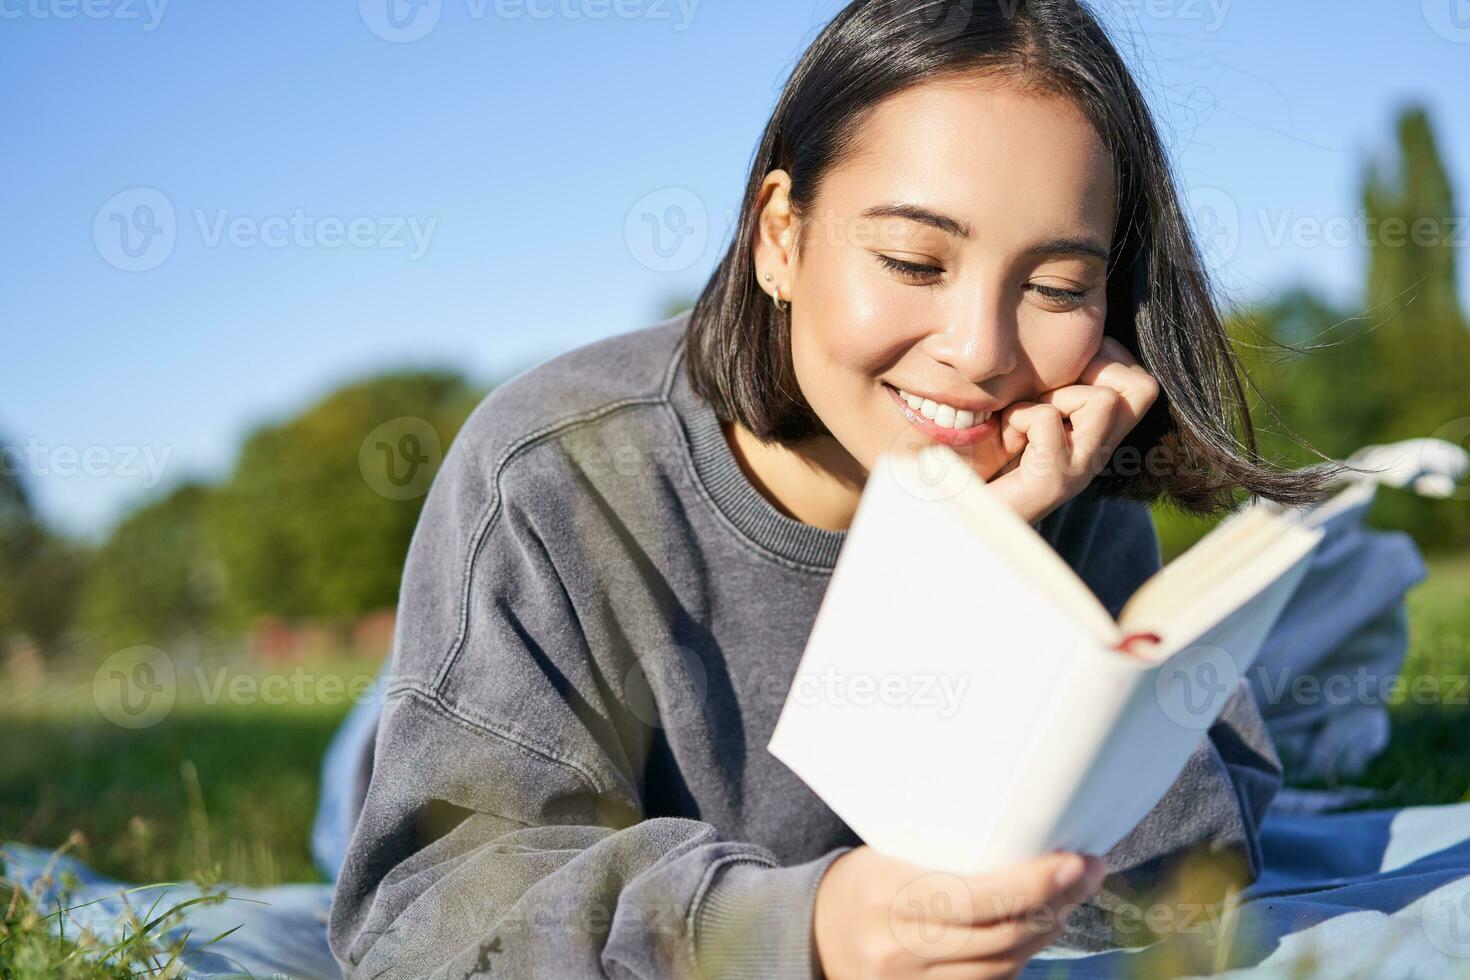 portrait de magnifique souriant asiatique fille, en train de lire dans parc, mensonge sur herbe avec préféré livre. loisir et gens concept photo